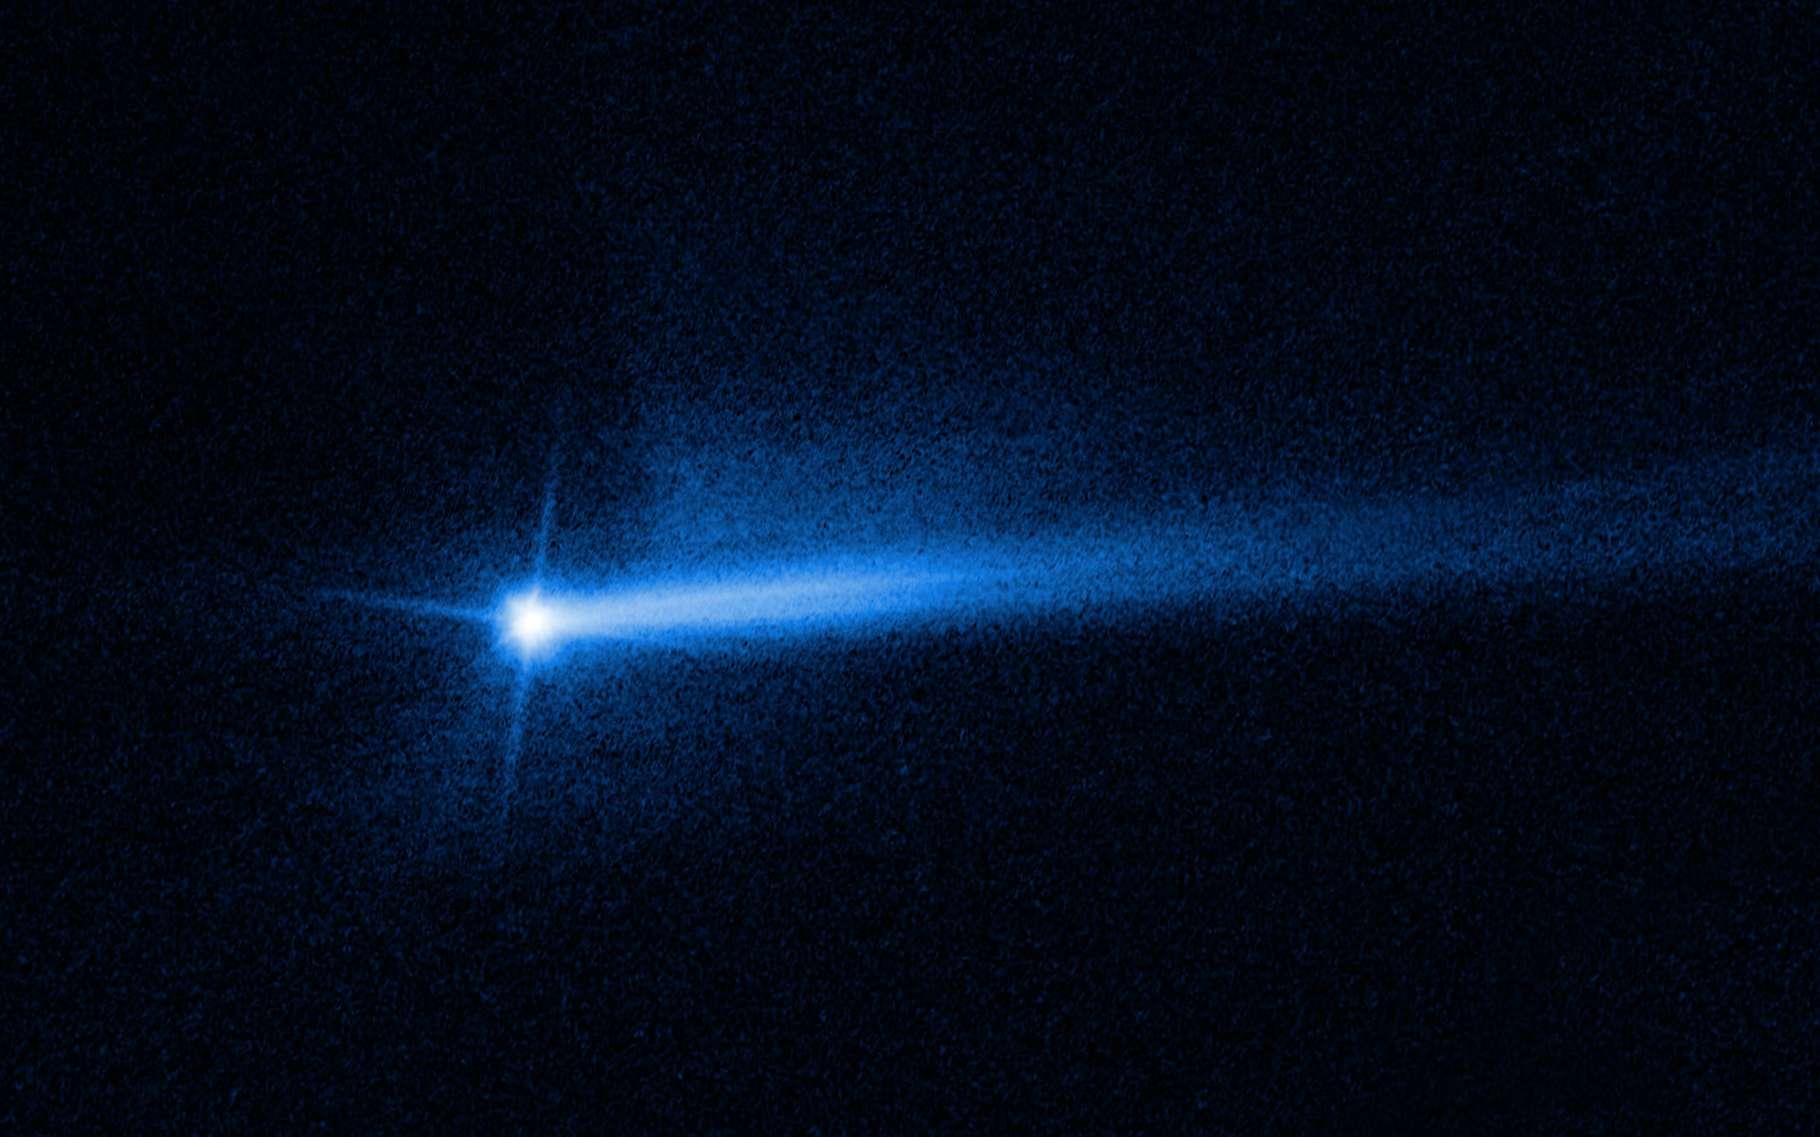 L'astéroïde percuté par la sonde Dart a formé une deuxième queue de débris à la surprise des astronomes